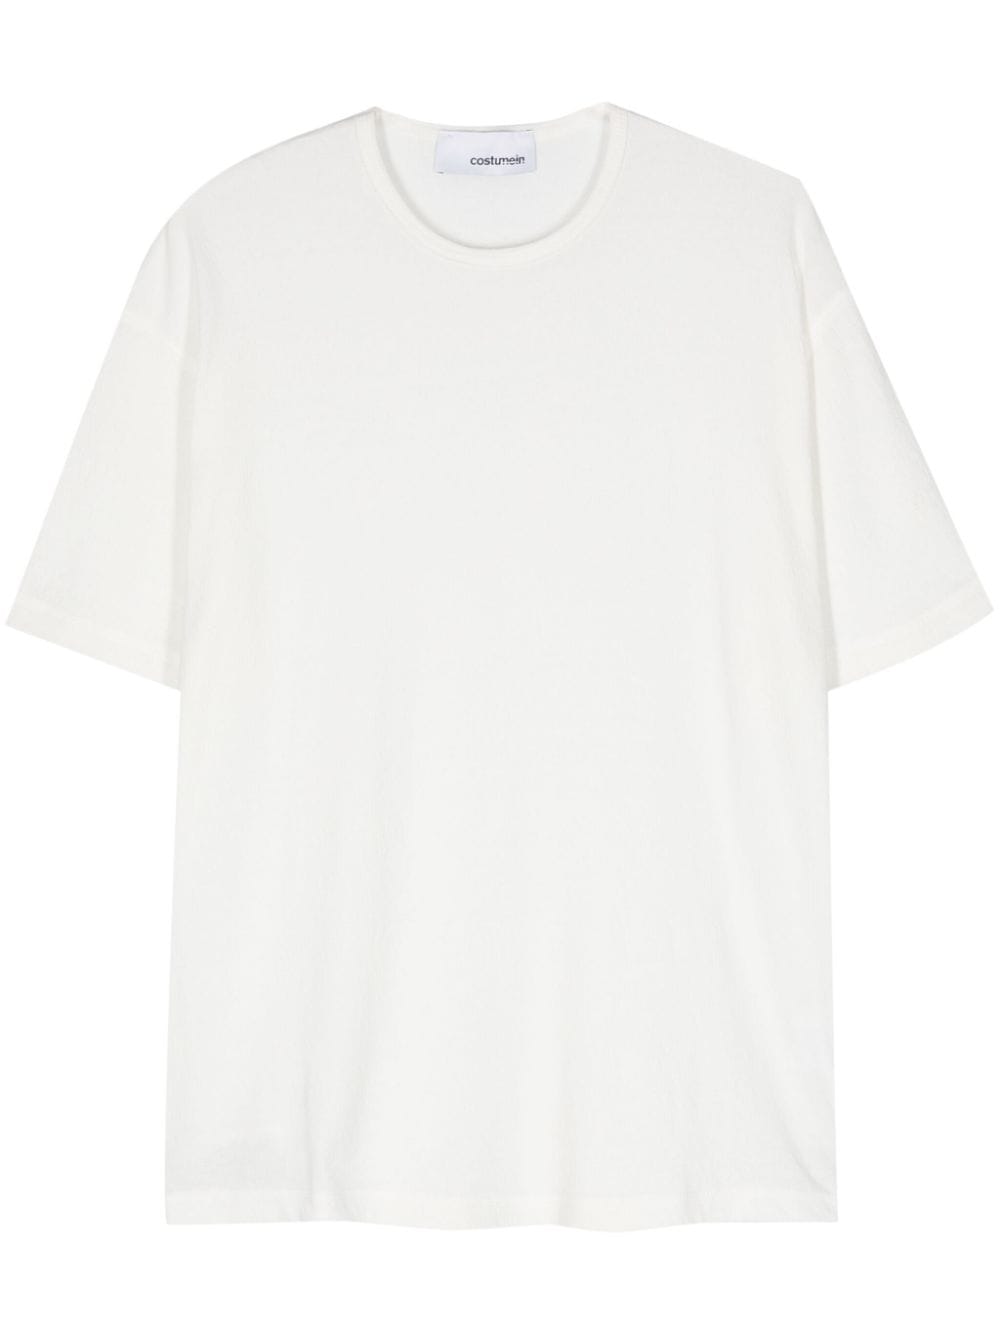 costumein t-shirt en coton - blanc